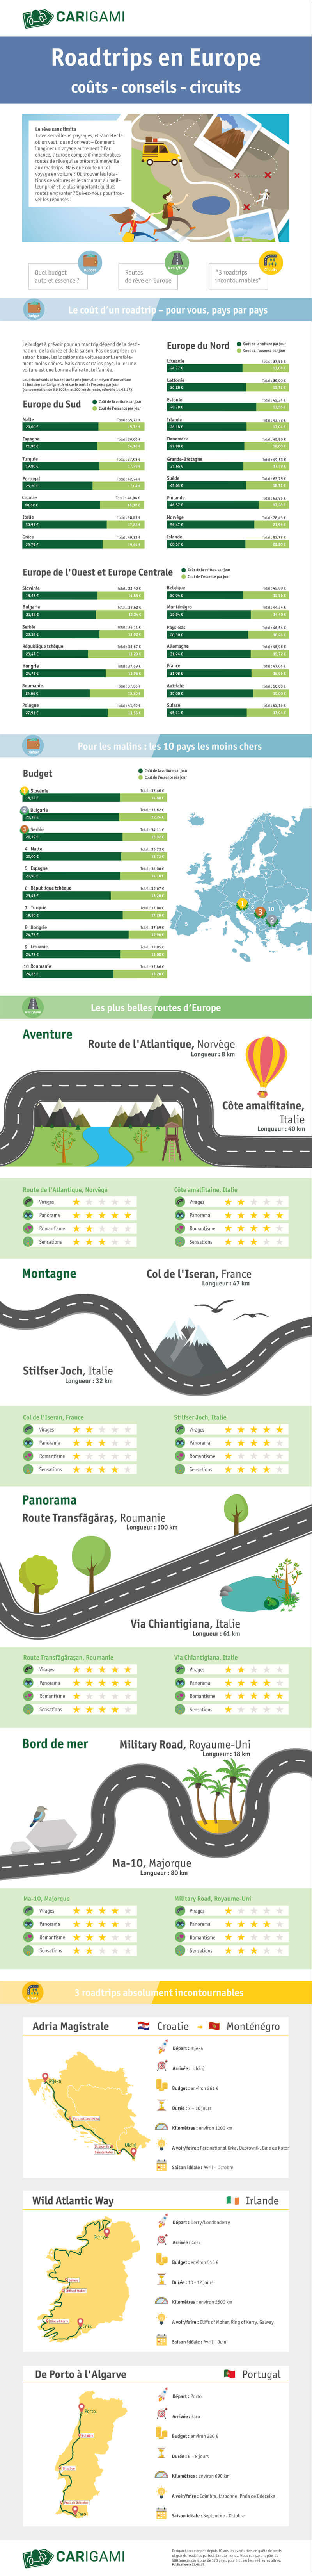 Infographie comparative des road trips en Europe.